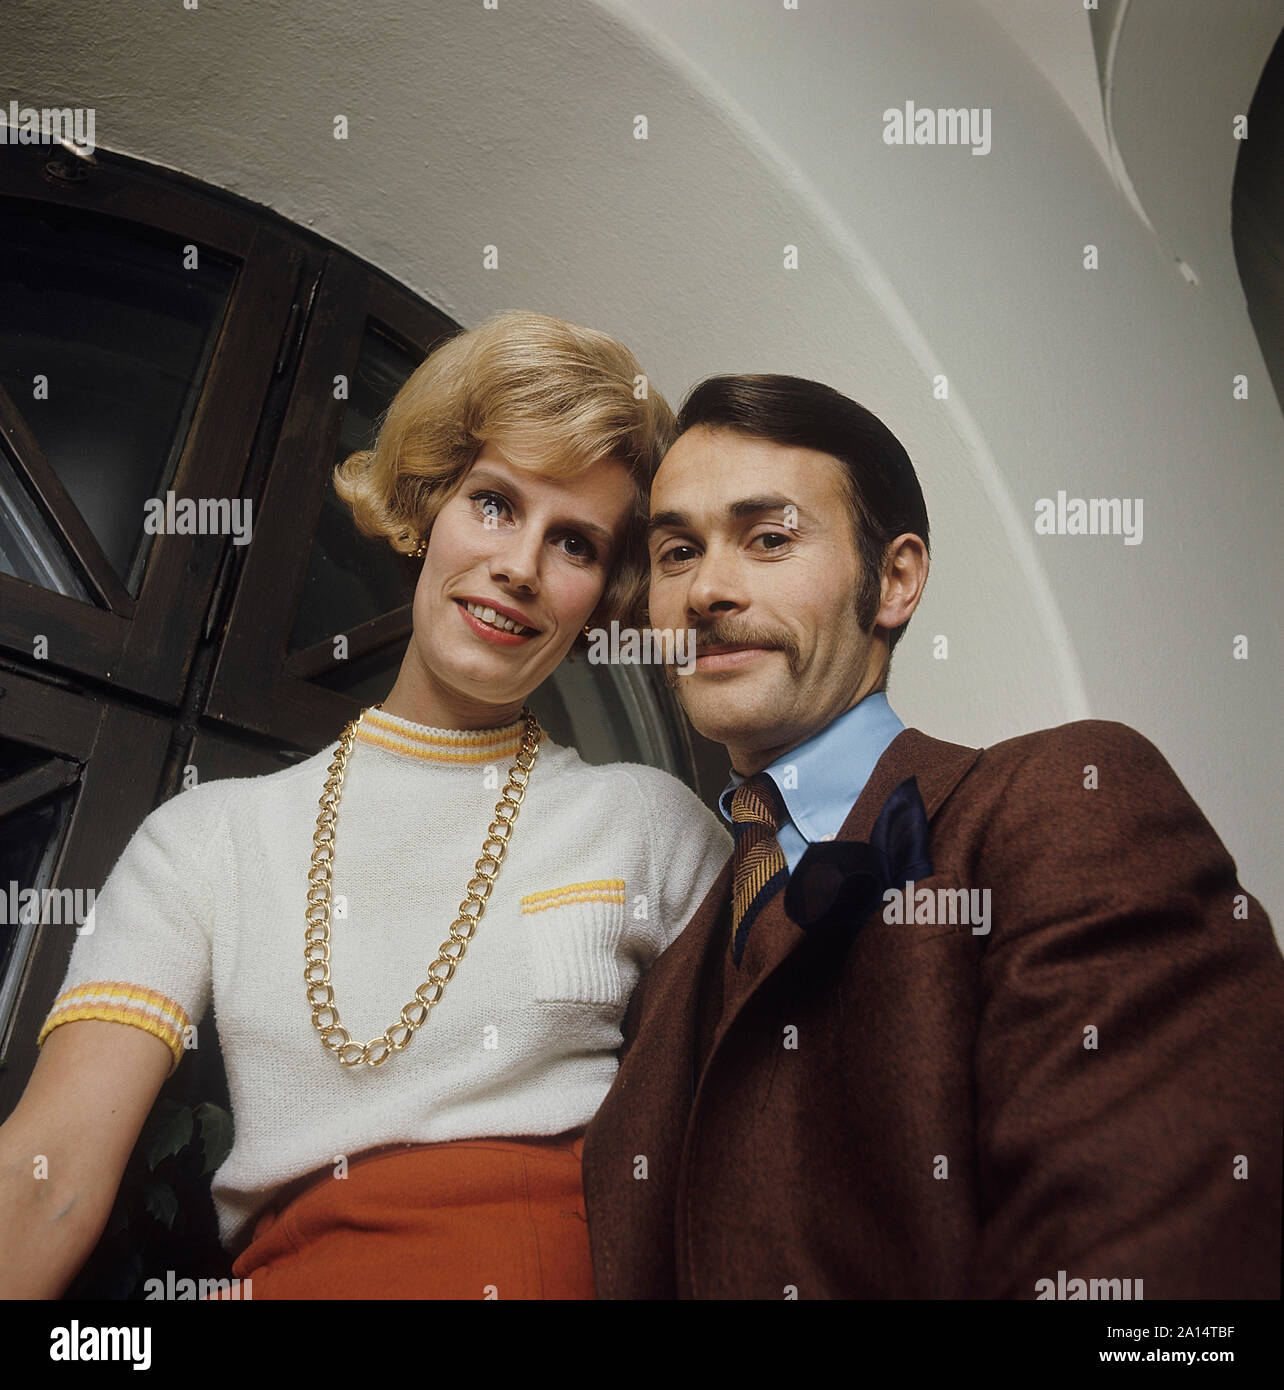 Mode homme des années 60 Banque de photographies et d'images à haute  résolution - Alamy